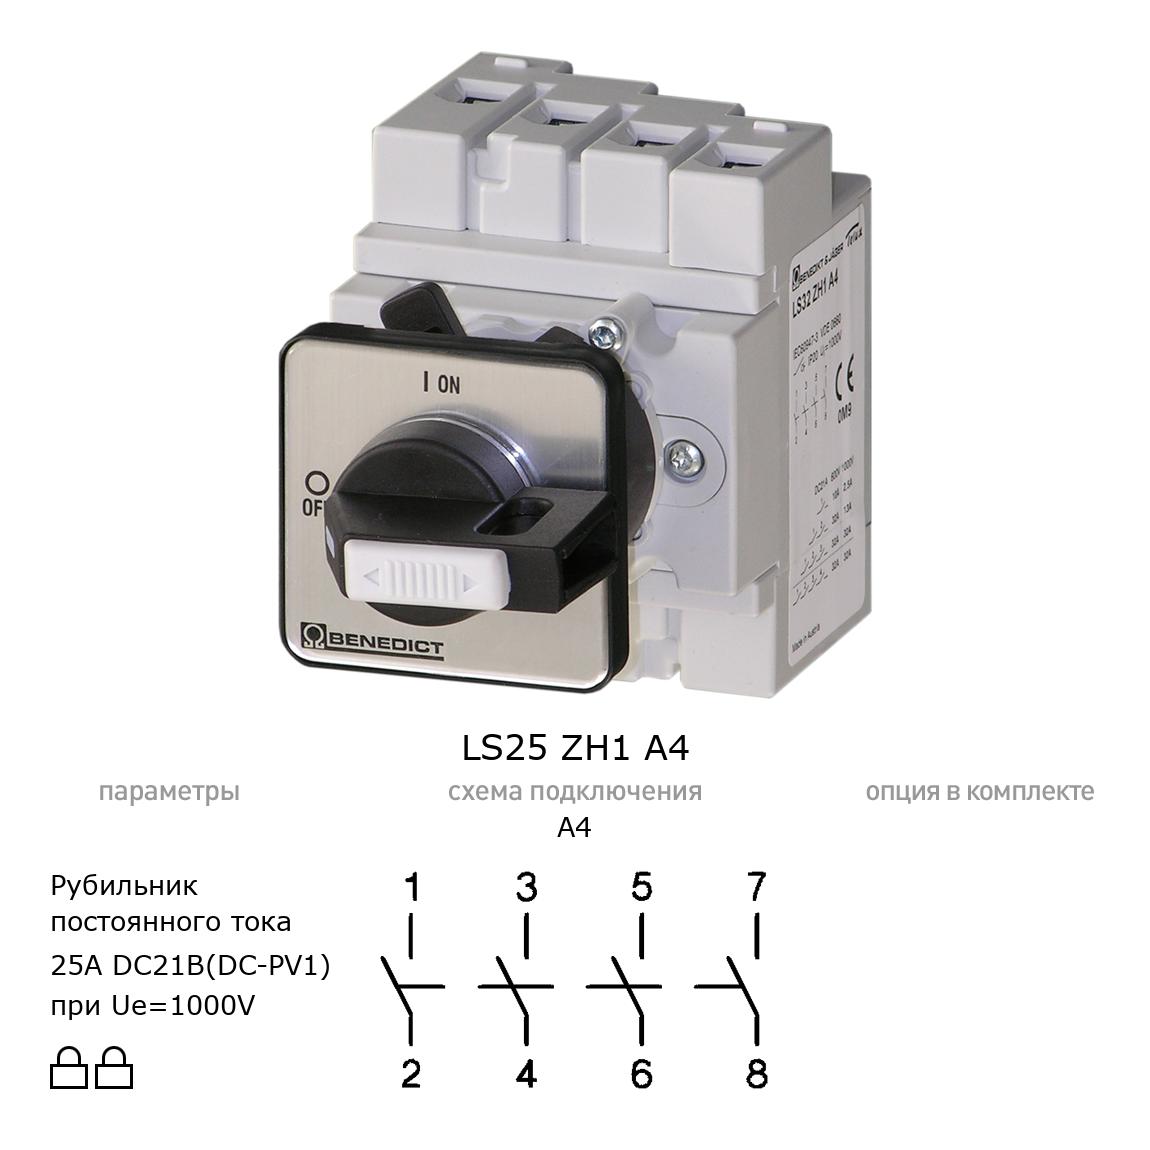 Выключатель нагрузки / рубильник для постоянного тока (DC) LS25 ZH1 A4 BENEDICT